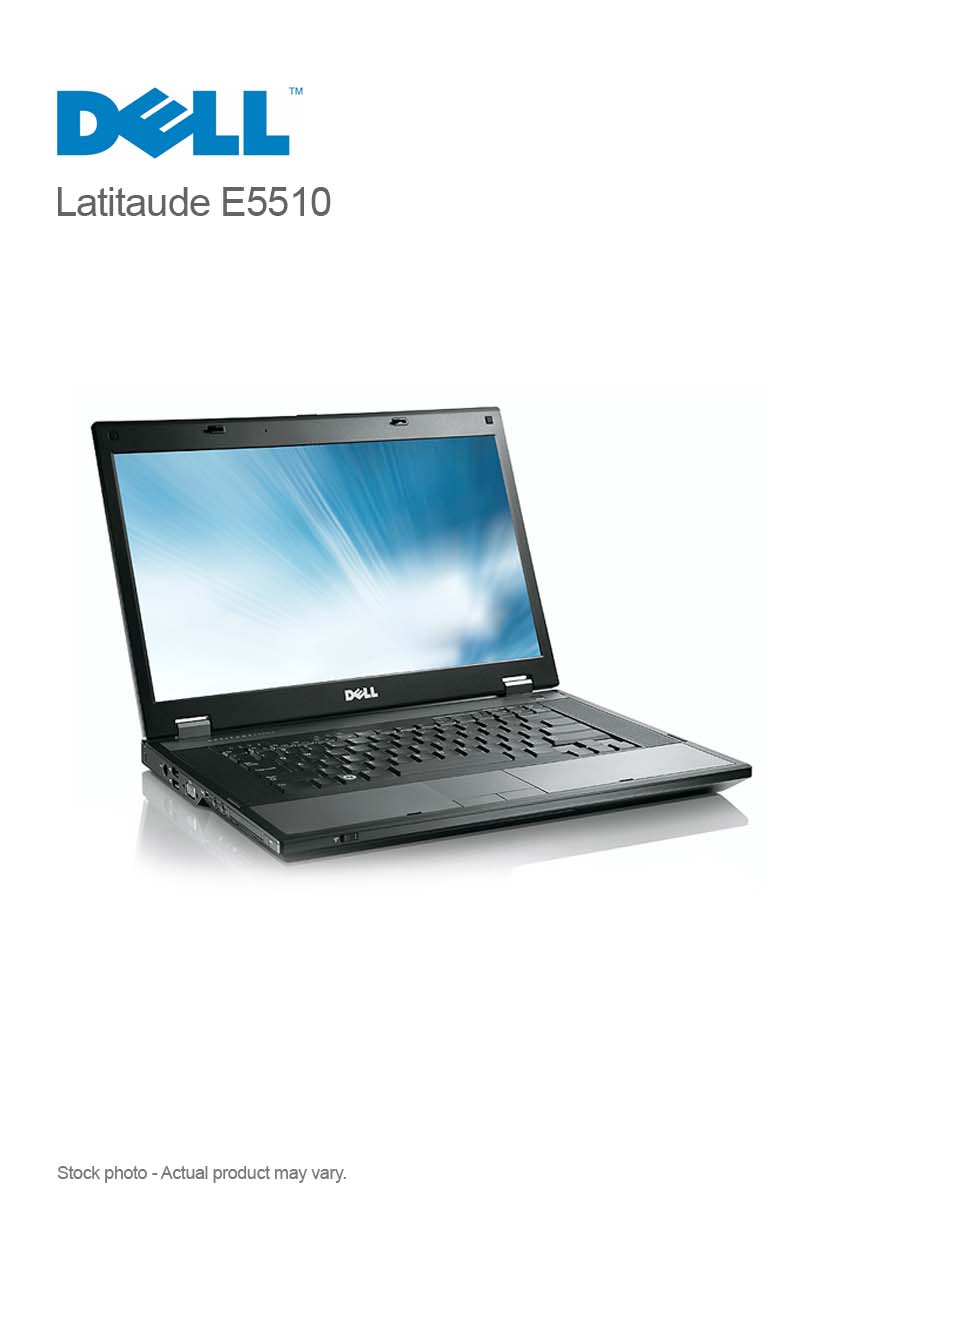 Dell Latitude E5510 Core I5 430m 4gb 250gb 15 6 Win 7 Pro Compupoint